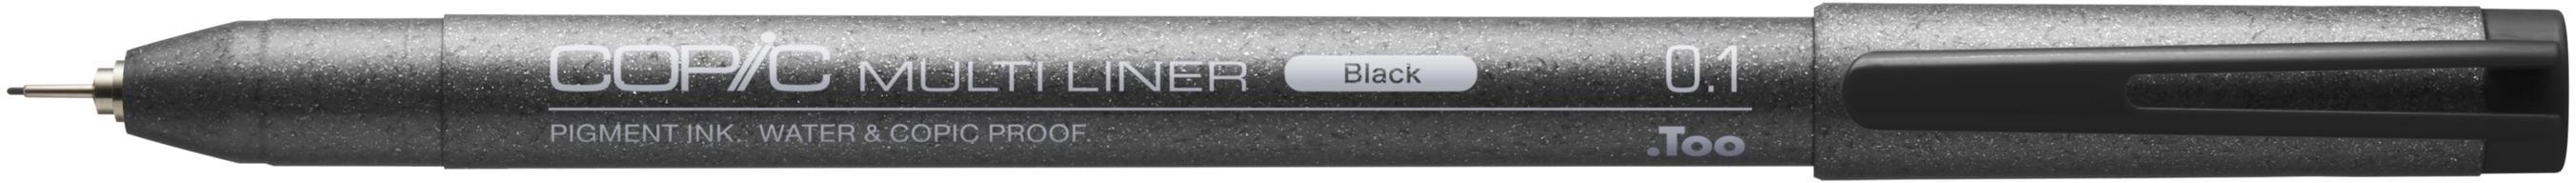 COPIC Multiliner 0.1mm 2207502 black